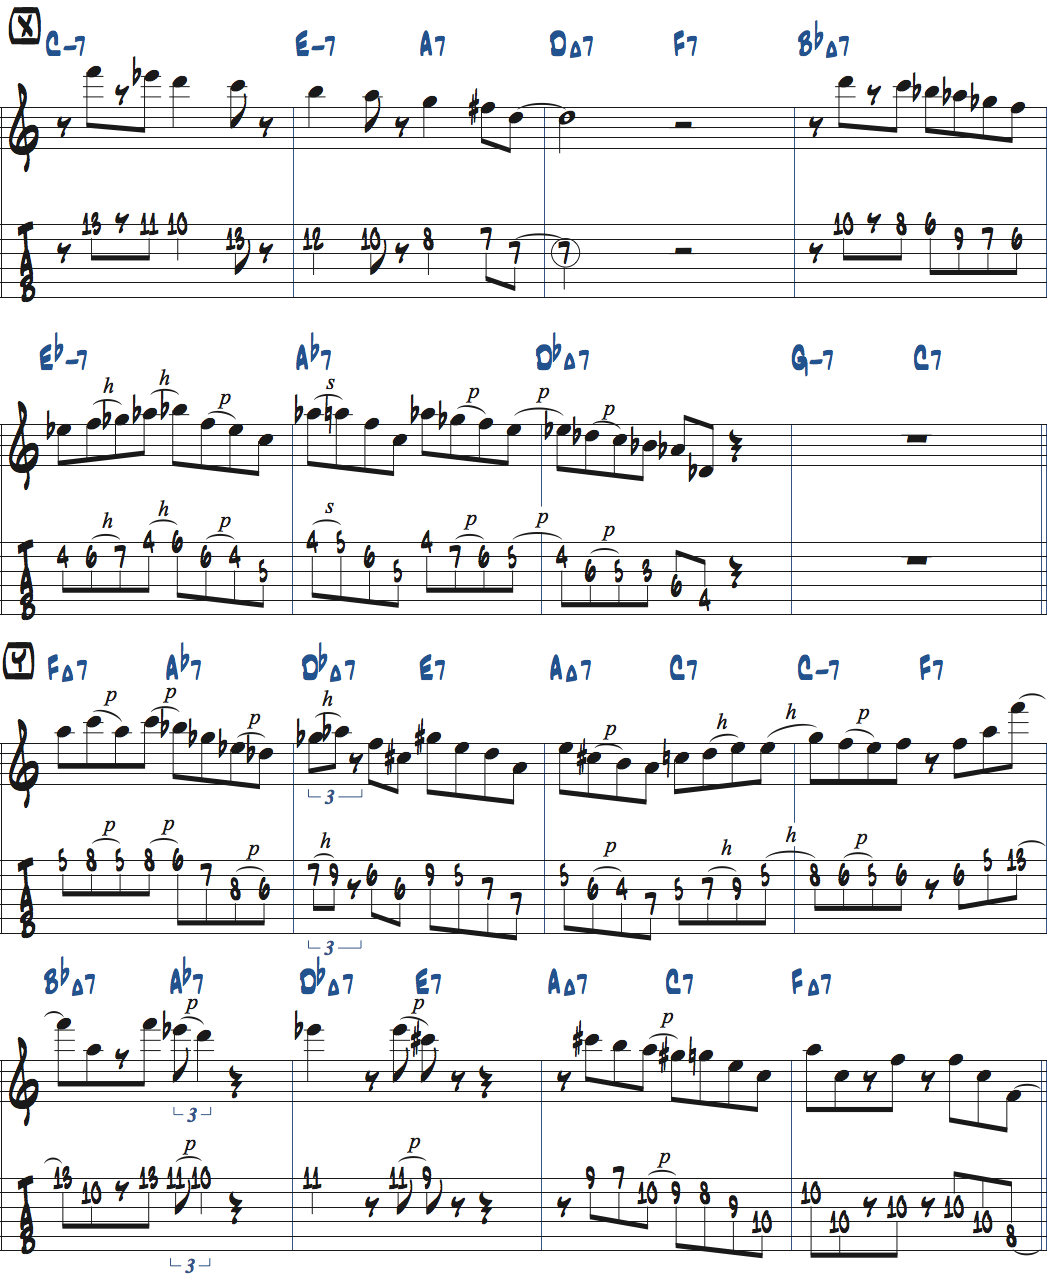 カート・ローゼンウィンケル「26-2」アドリブ7コラース目タブ譜付きギタースコア楽譜ページ2